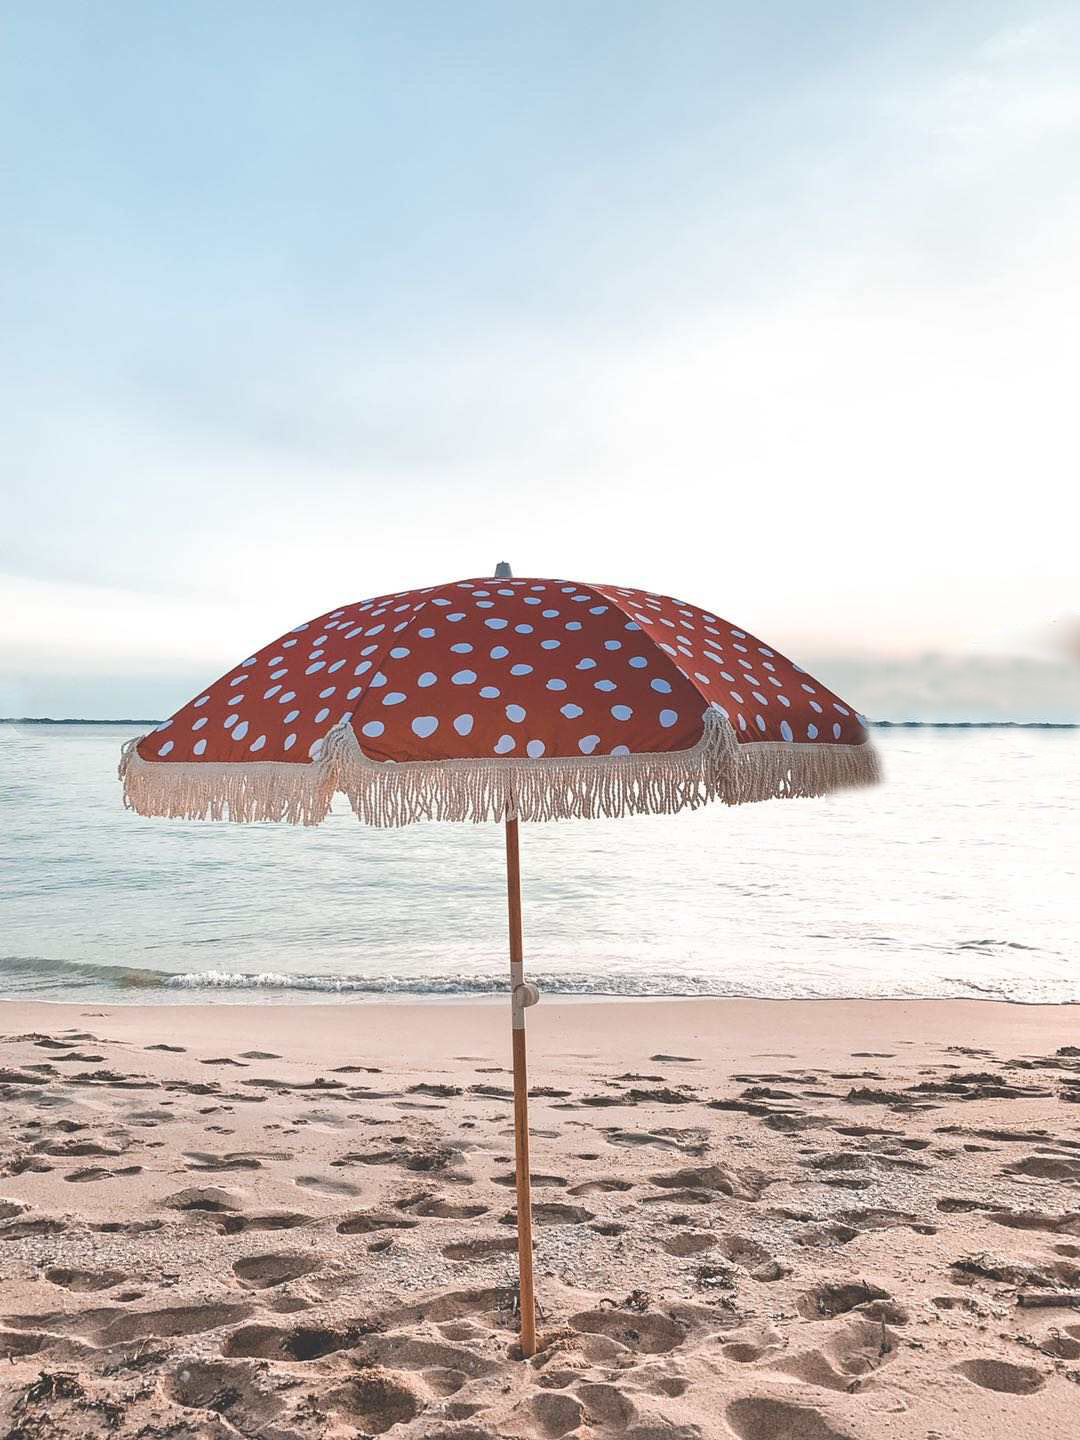 купить Зонт с бахромой 6,5 футов, наклонный пляжный зонт, уличный коммерческий зонтик для патио, садовый зонт,Зонт с бахромой 6,5 футов, наклонный пляжный зонт, уличный коммерческий зонтик для патио, садовый зонт цена,Зонт с бахромой 6,5 футов, наклонный пляжный зонт, уличный коммерческий зонтик для патио, садовый зонт бренды,Зонт с бахромой 6,5 футов, наклонный пляжный зонт, уличный коммерческий зонтик для патио, садовый зонт производитель;Зонт с бахромой 6,5 футов, наклонный пляжный зонт, уличный коммерческий зонтик для патио, садовый зонт Цитаты;Зонт с бахромой 6,5 футов, наклонный пляжный зонт, уличный коммерческий зонтик для патио, садовый зонт компания